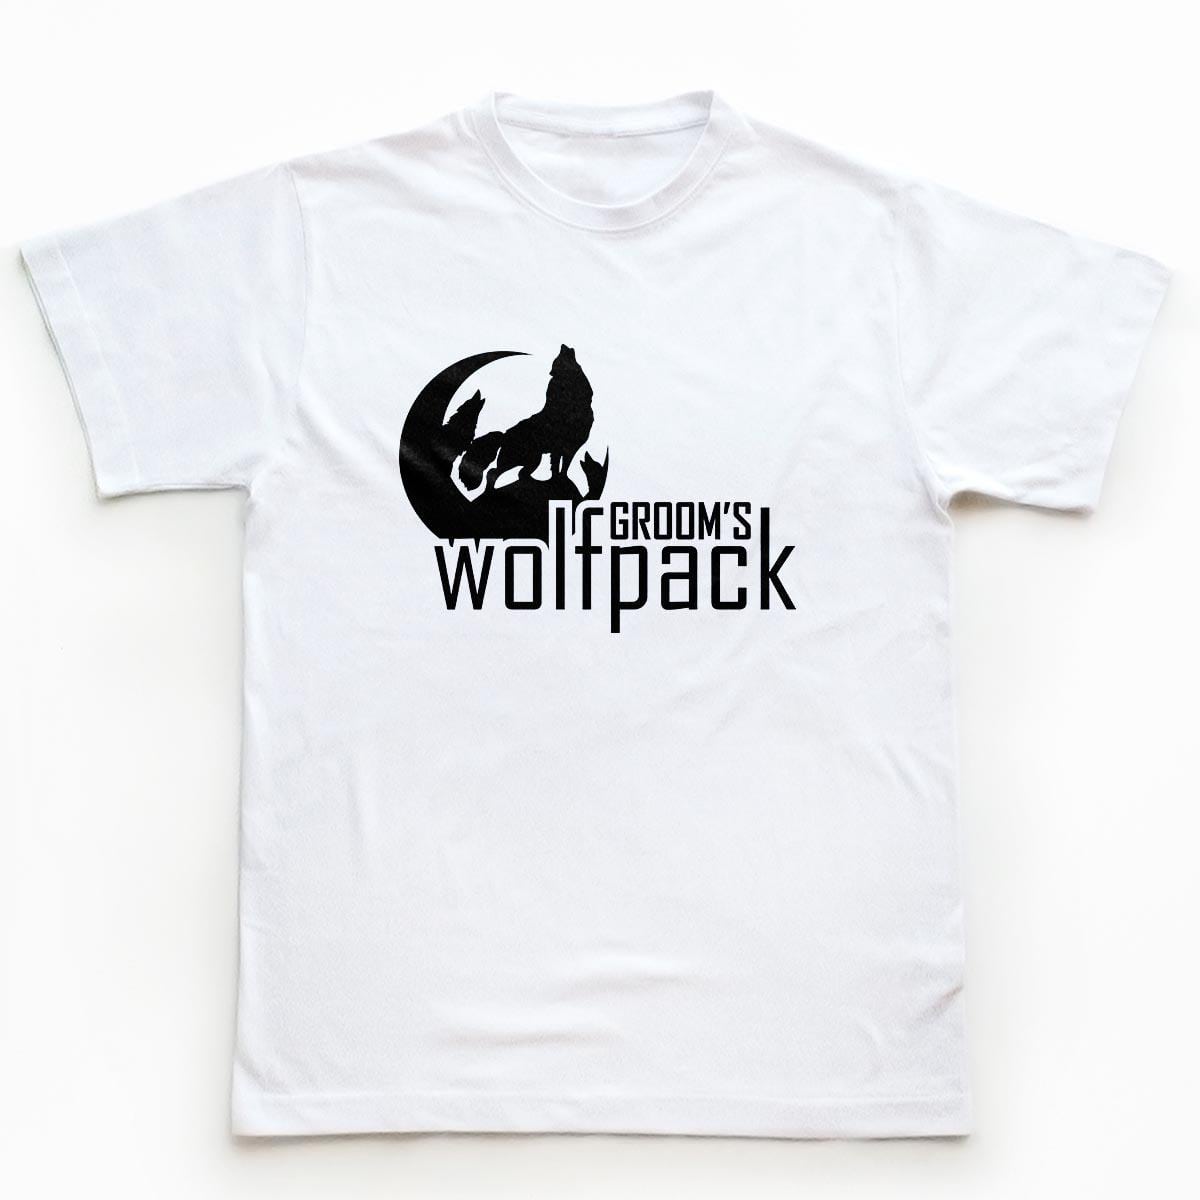 Tricouri petrecerea burlacilor - Wolfpack 1